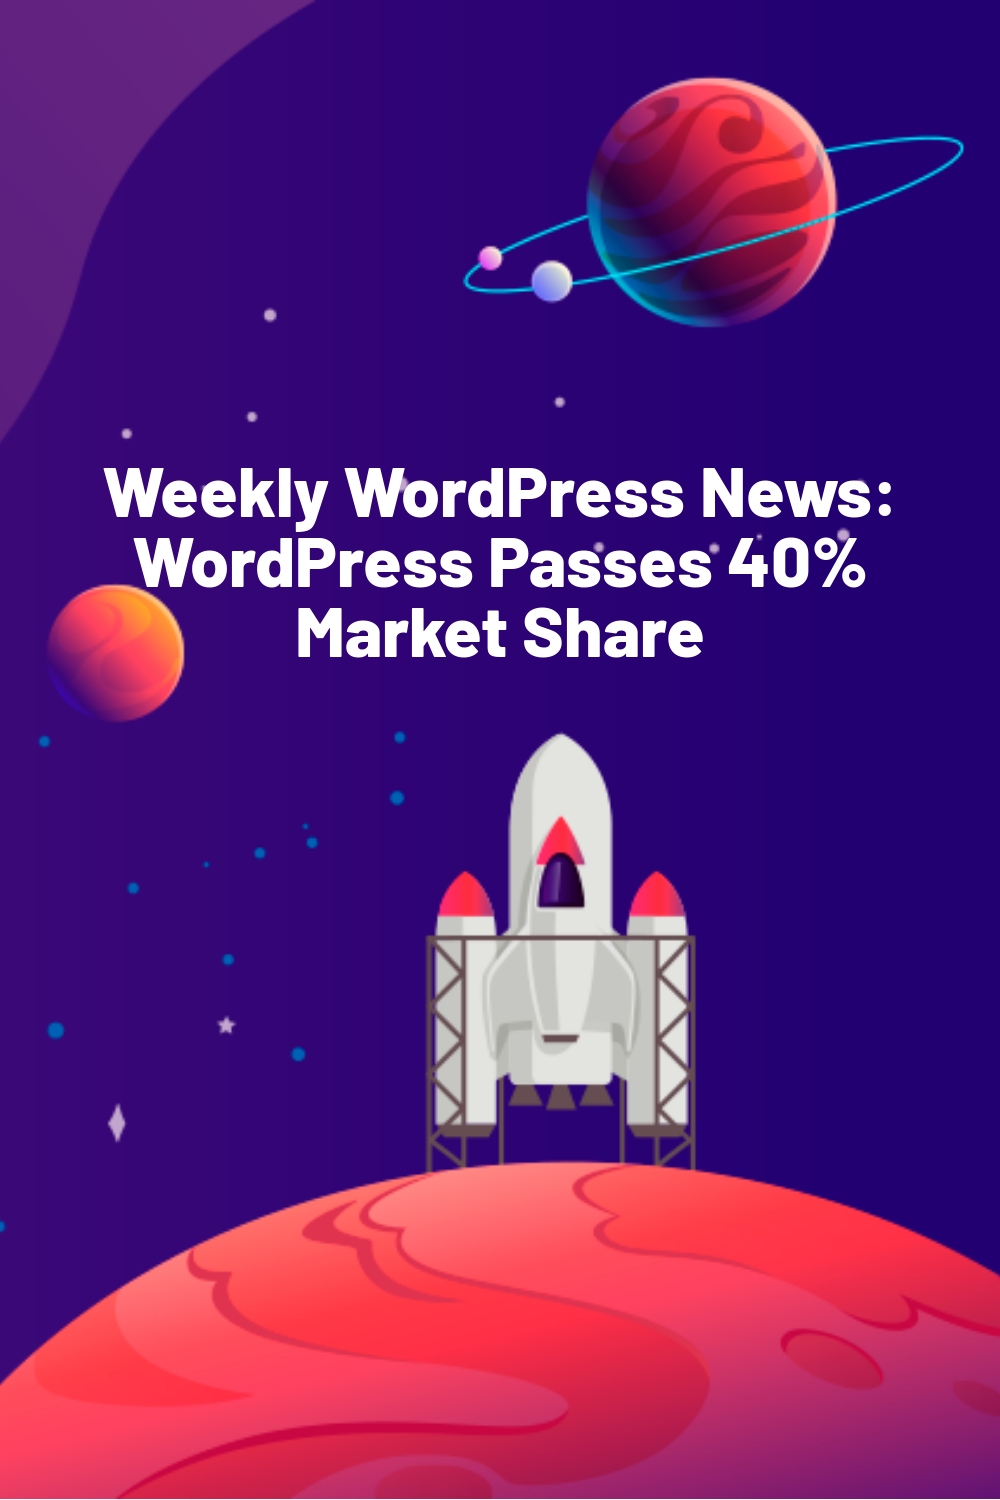 Weekly WordPress News: WordPress Passes 40% Market Share